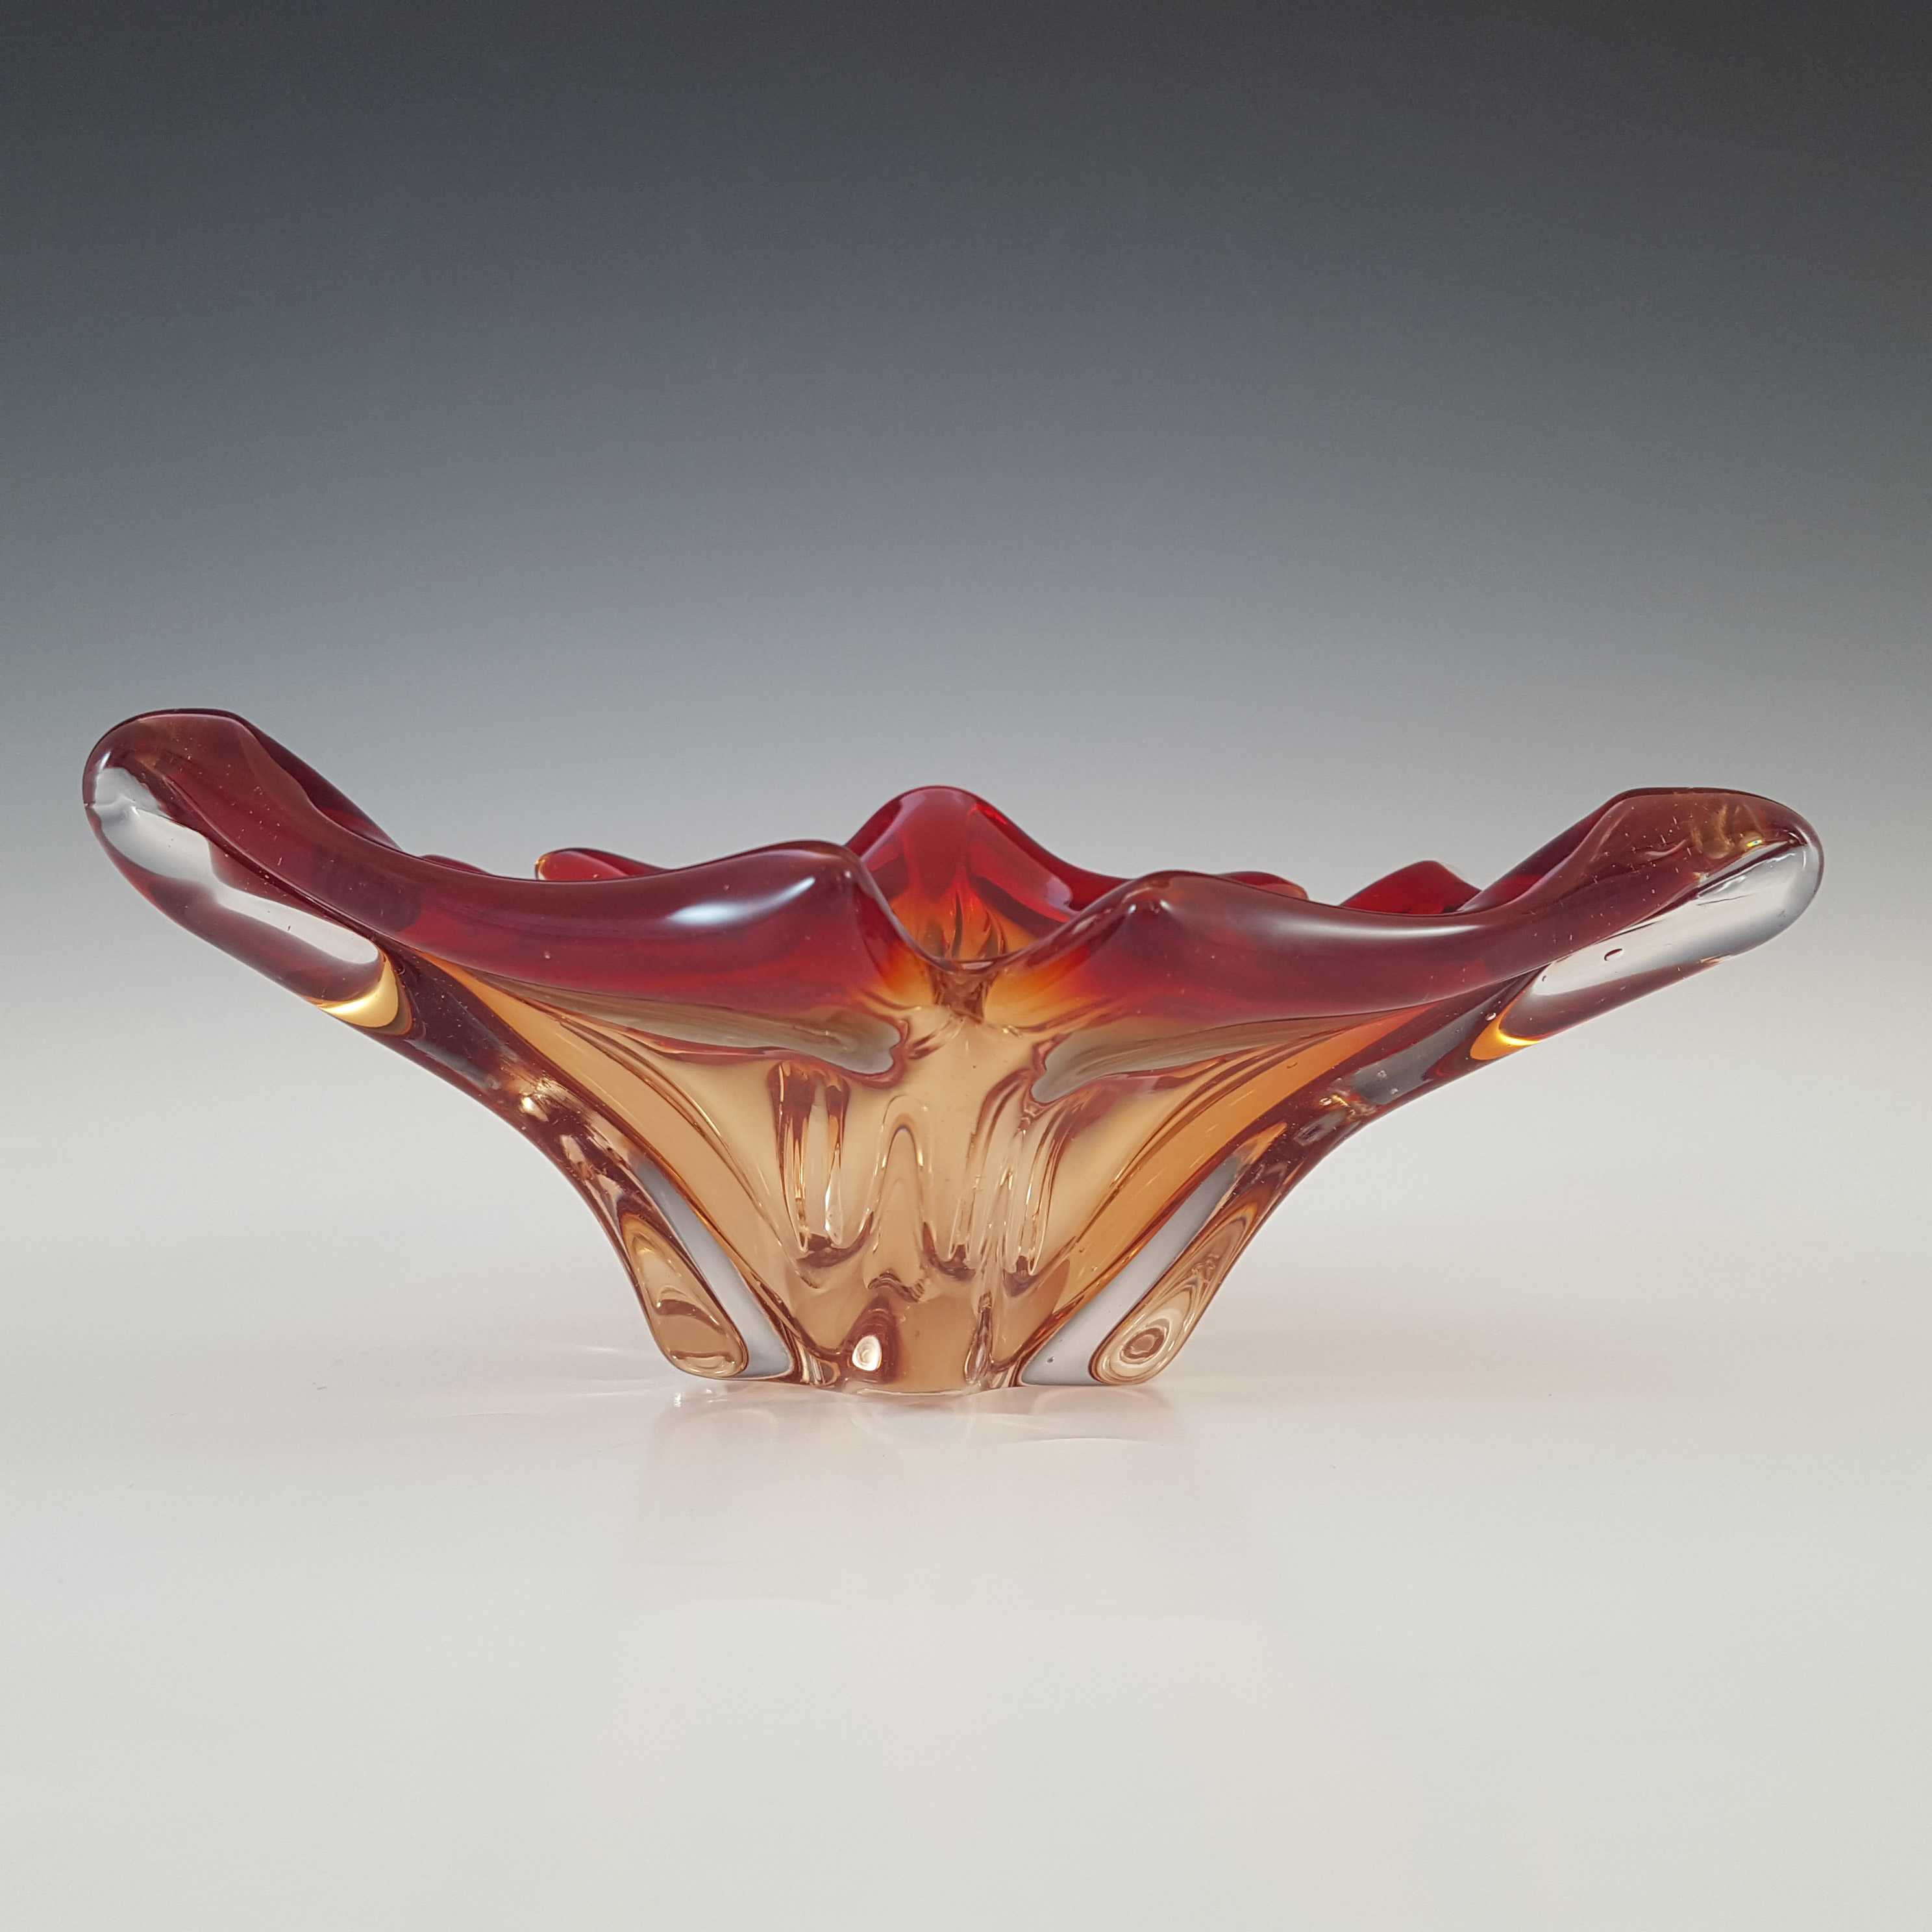 Cristallo Venezia Retro Murano Red & Clear Sommerso Glass Bowl - Click Image to Close